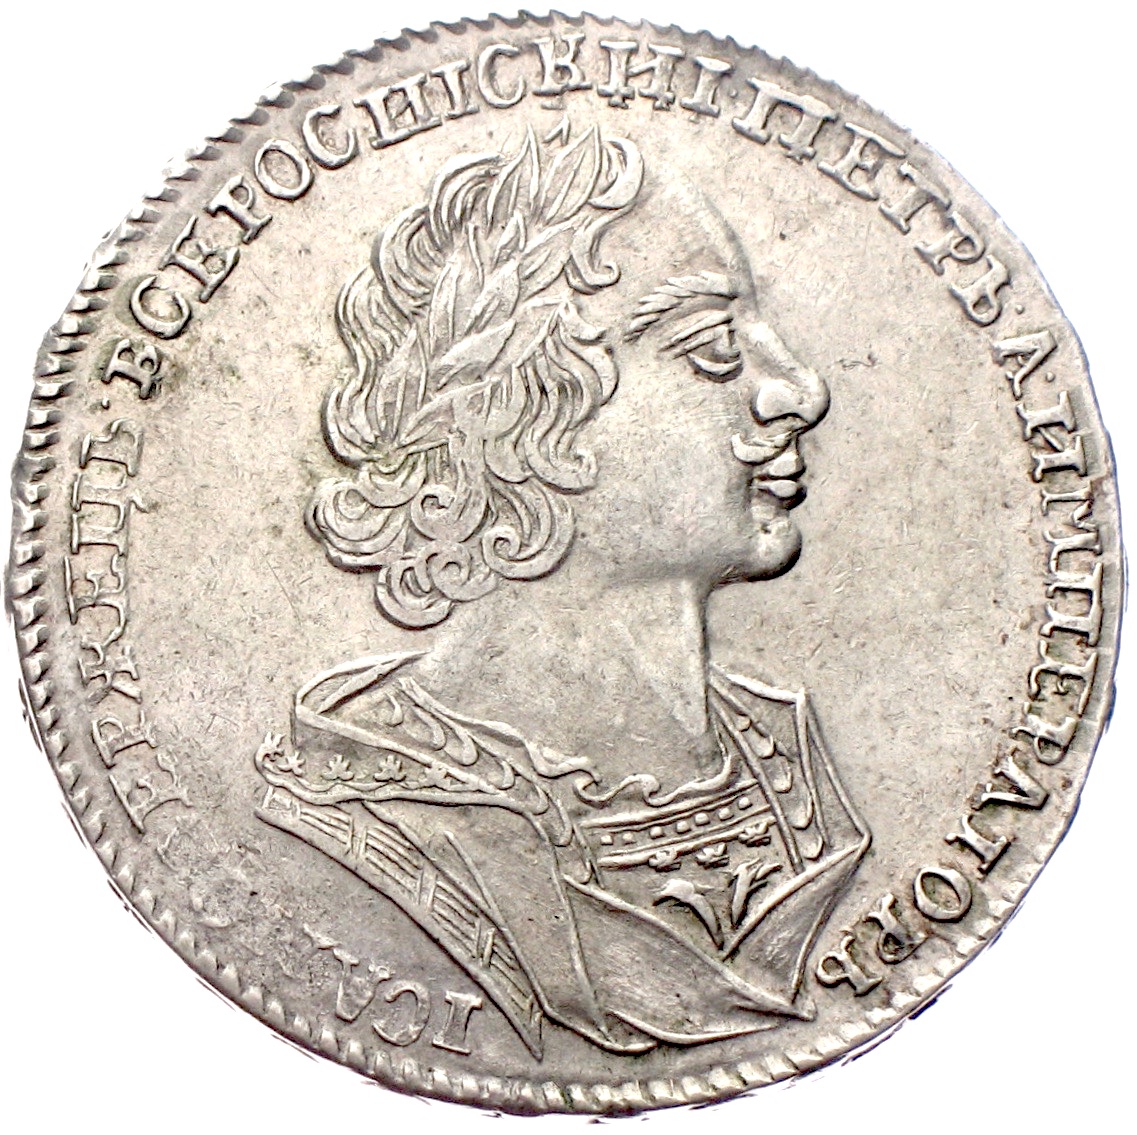 Russland Rubel Peter I. 1724 Ankauf russischer Gold- und Silbermünzen